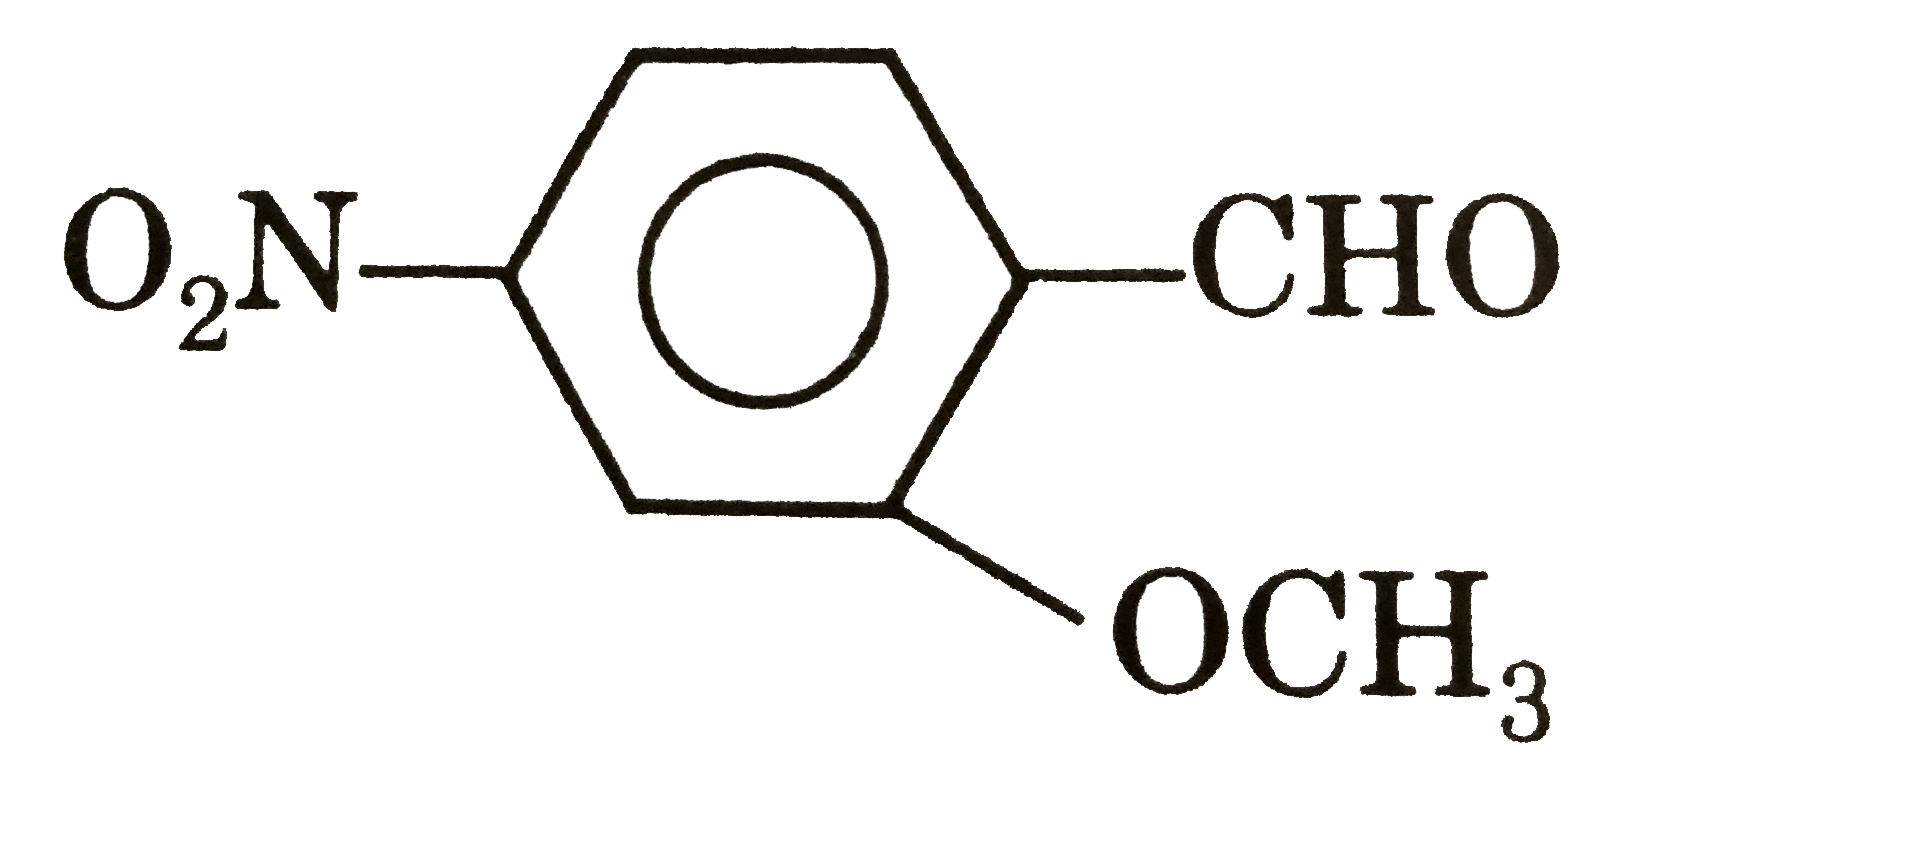 The IUPAC name of